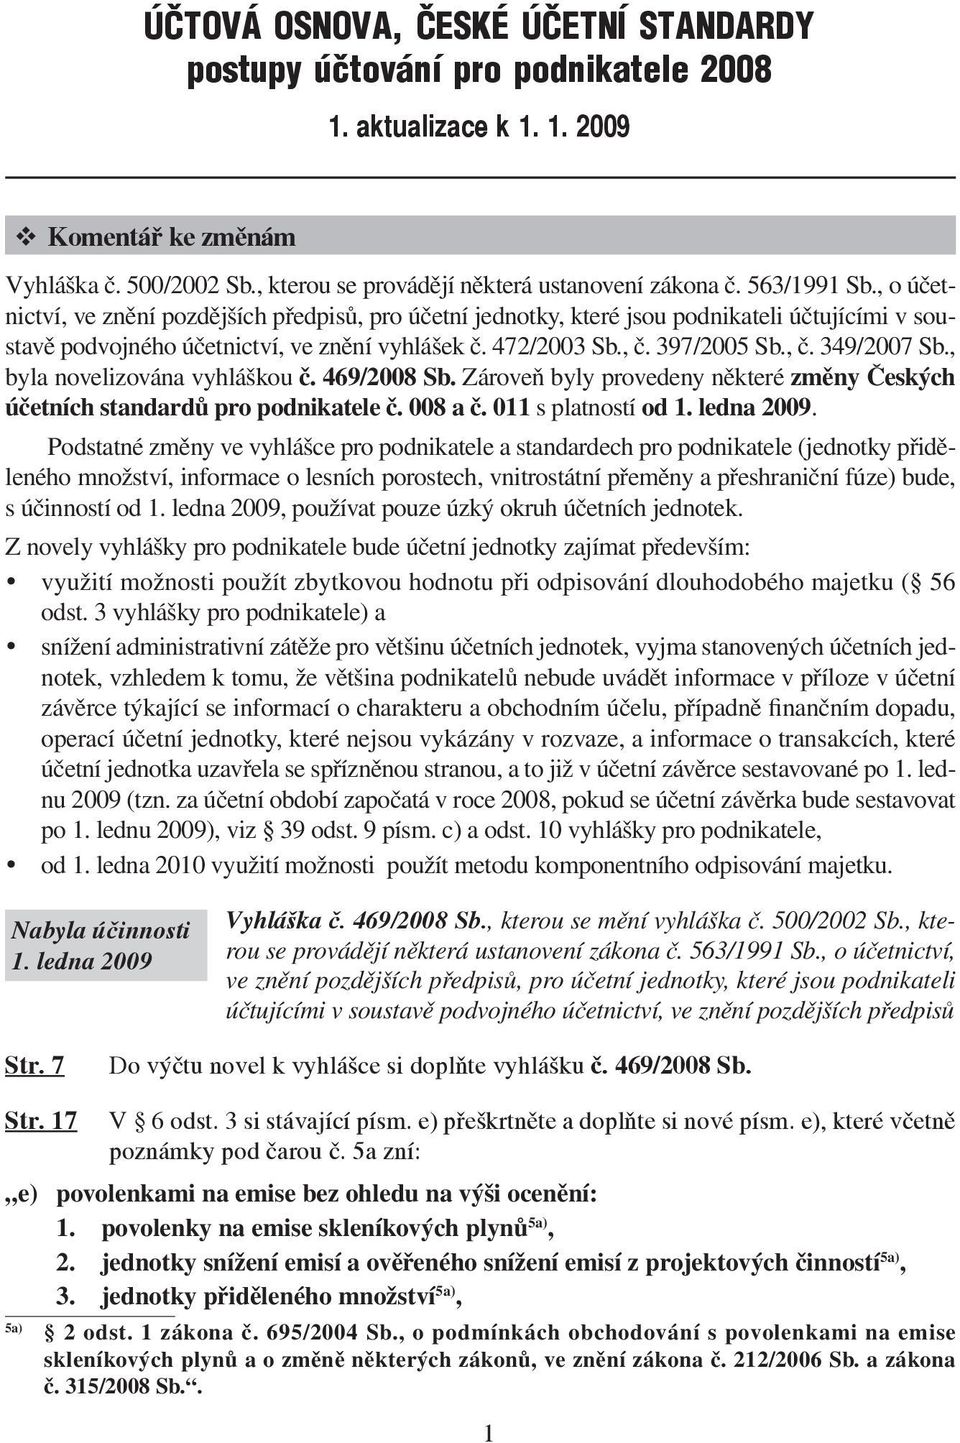 , č. 349/2007 Sb., byla novelizována vyhláškou č. 469/2008 Sb. Zároveň byly provedeny některé změny Českých účetních standardů pro podnikatele č. 008 a č. 011 s platností od 1. ledna 2009.